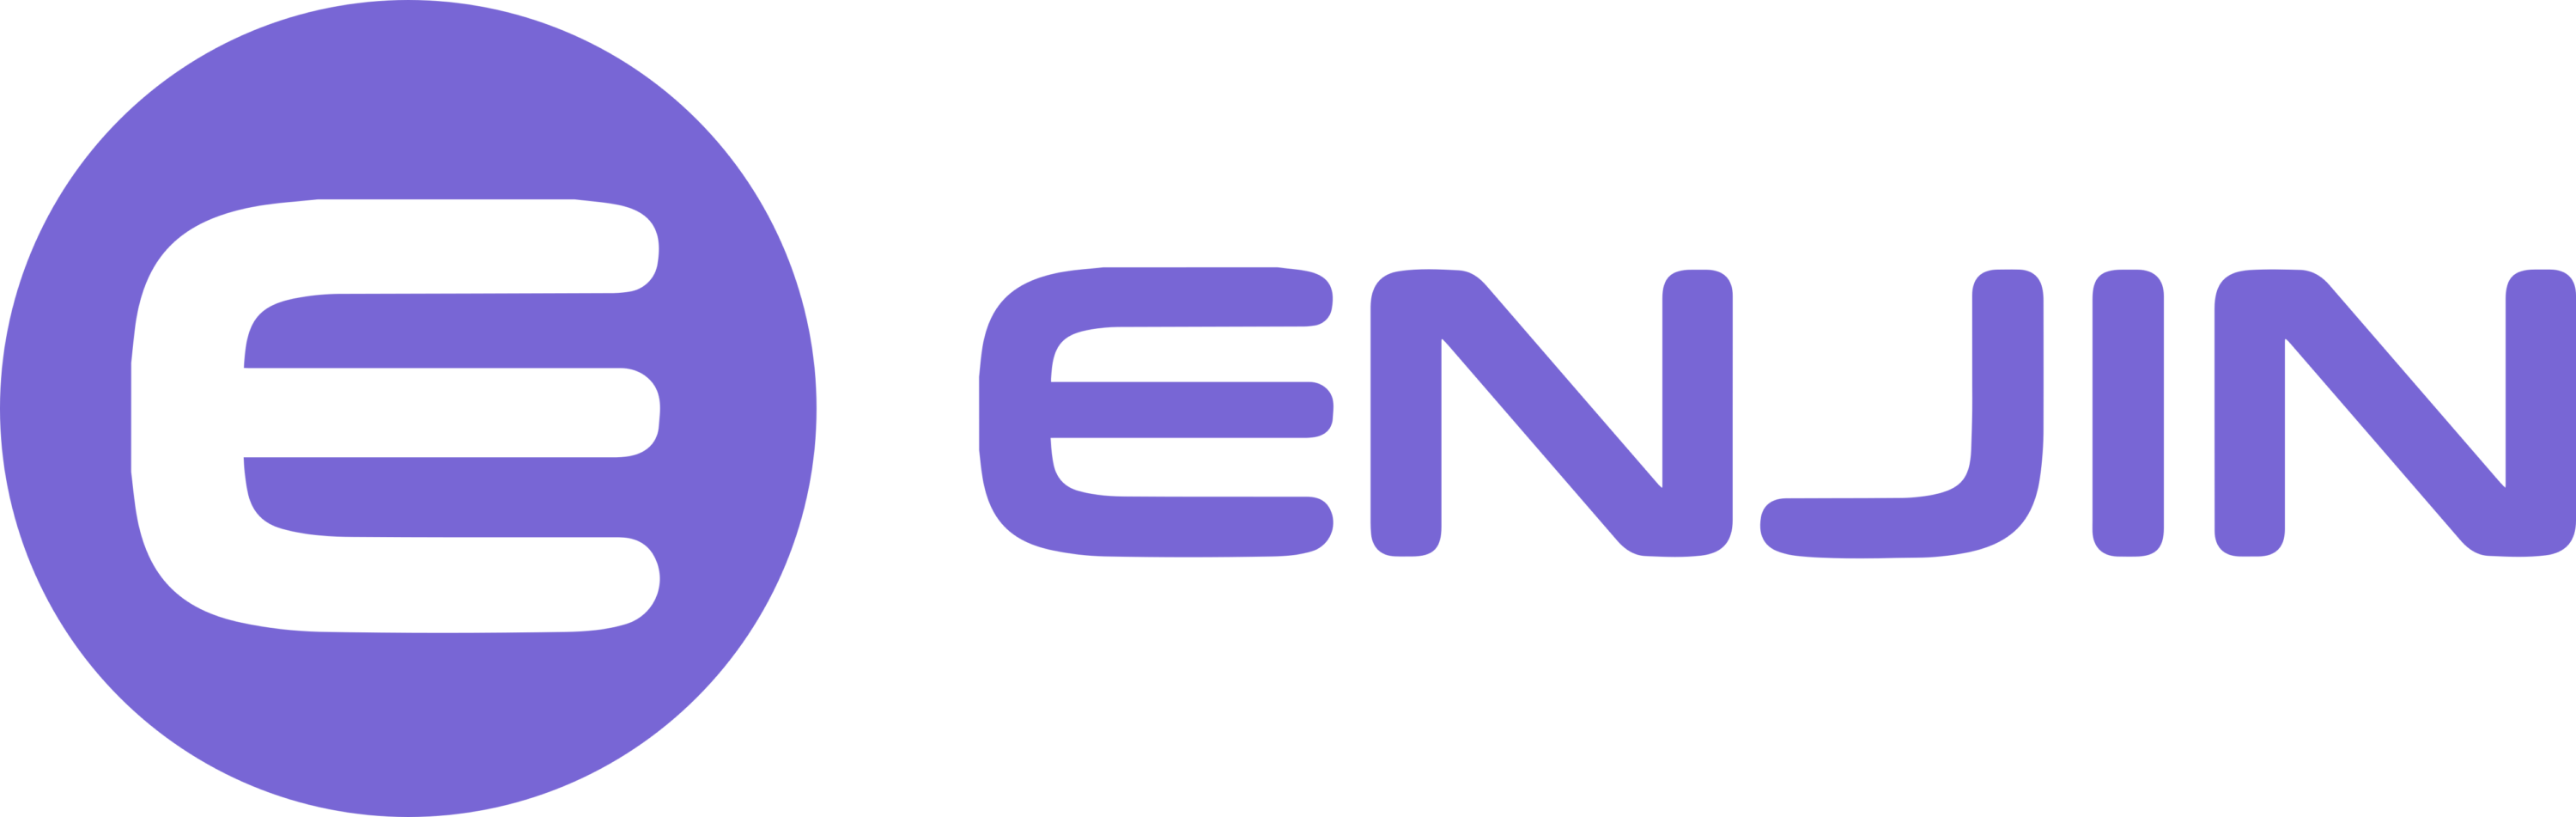 Enjin Coin Logo full